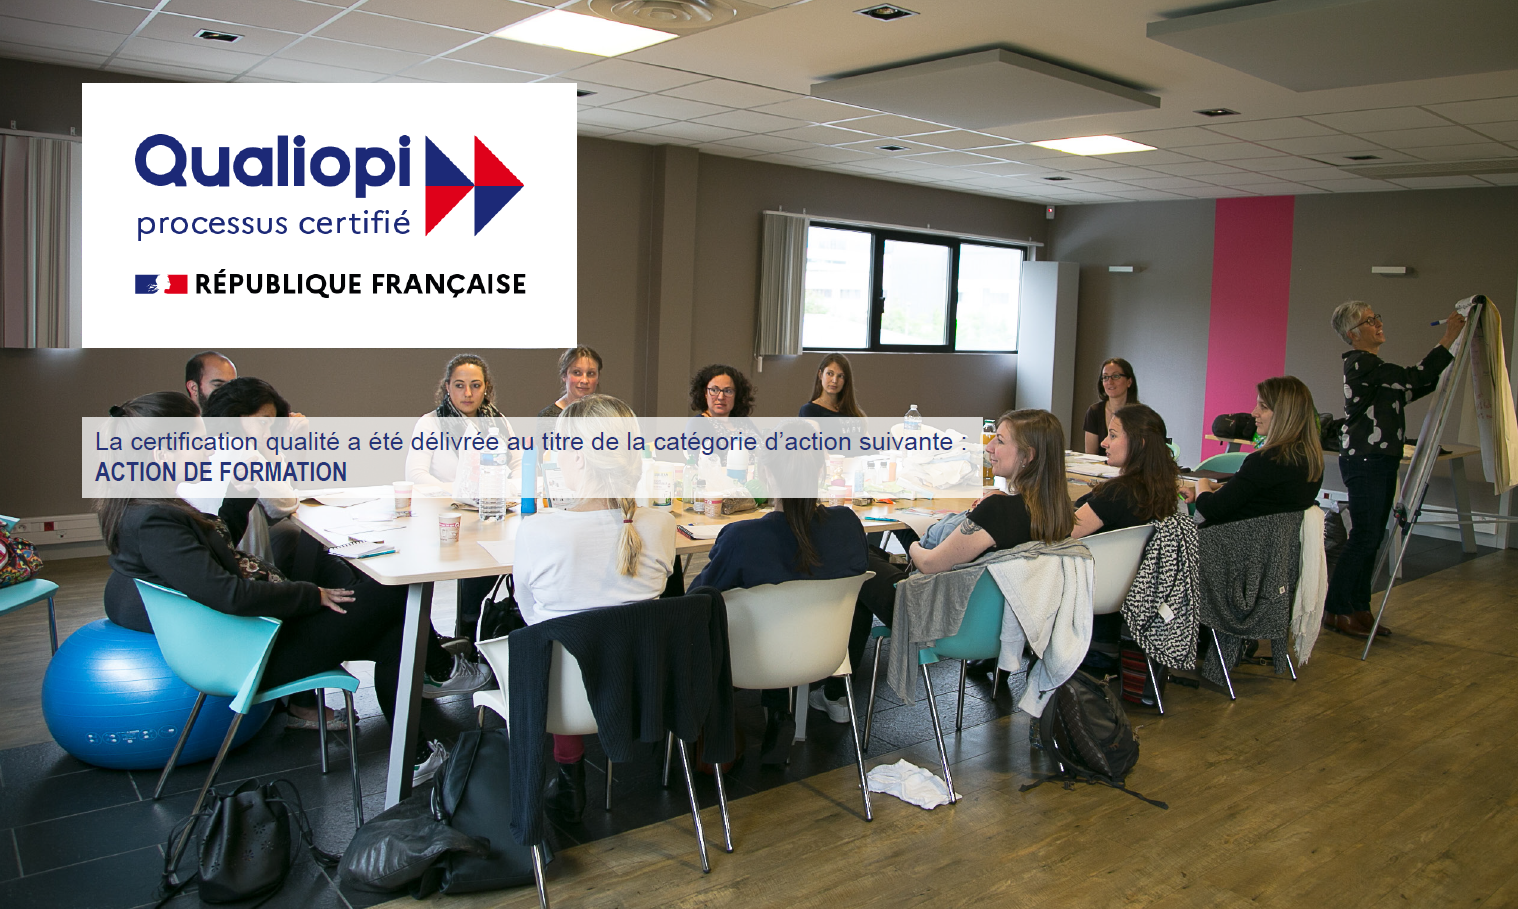 Wecf France obtient la certification Qualiopi pour ses actions de formation